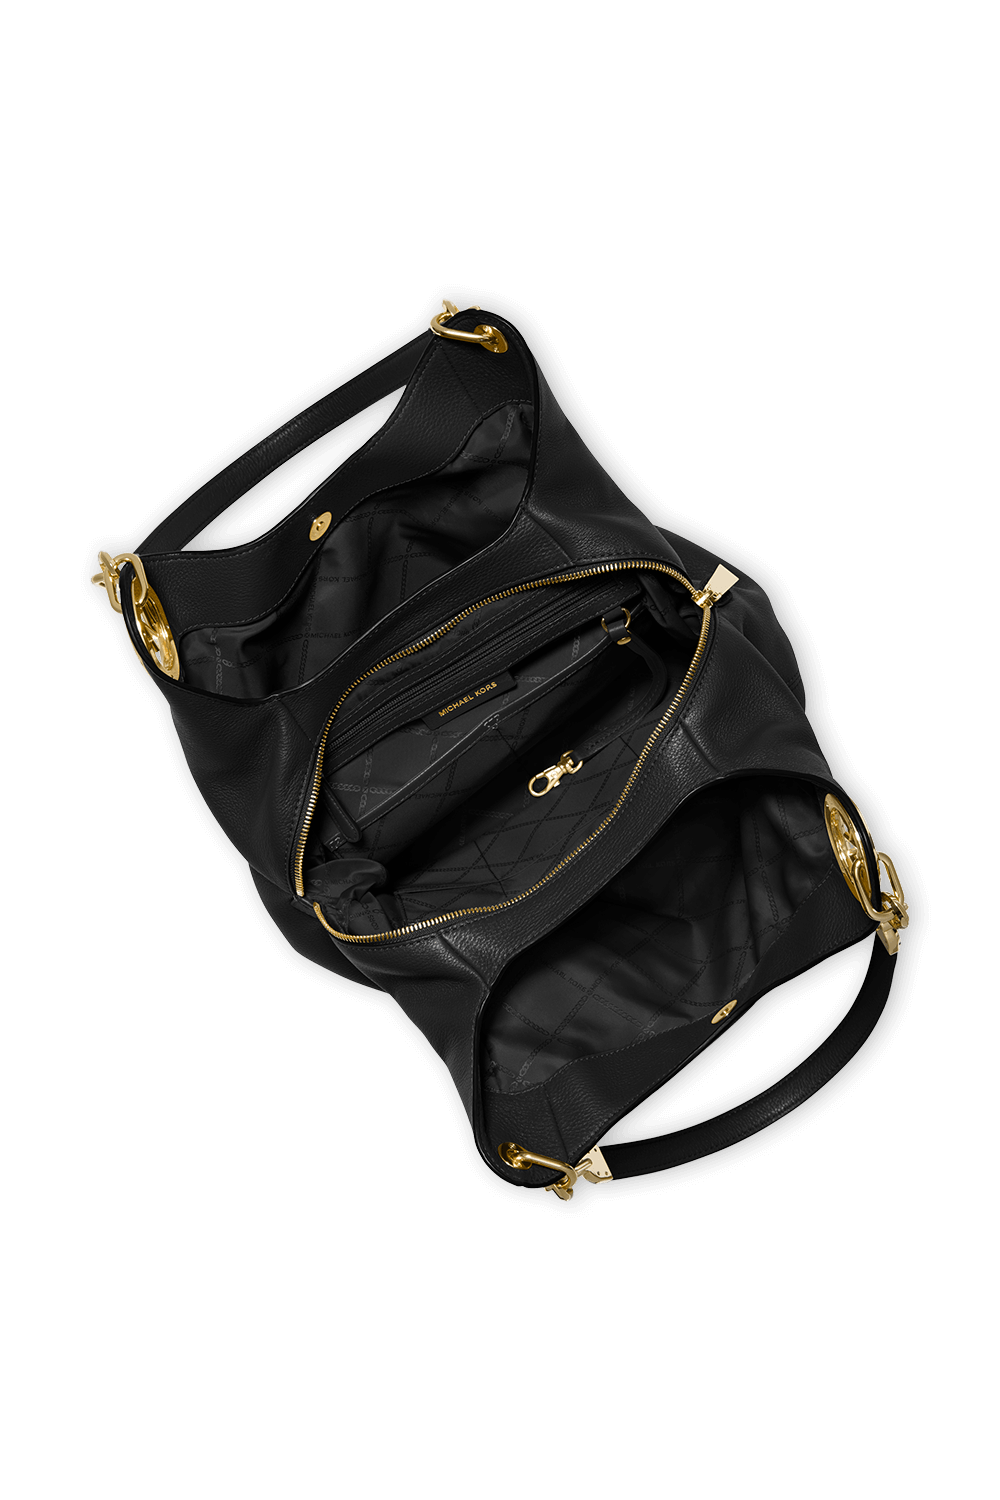 Lillie Pebbled Leather Shoulder Bag In Black MICHAEL KORS